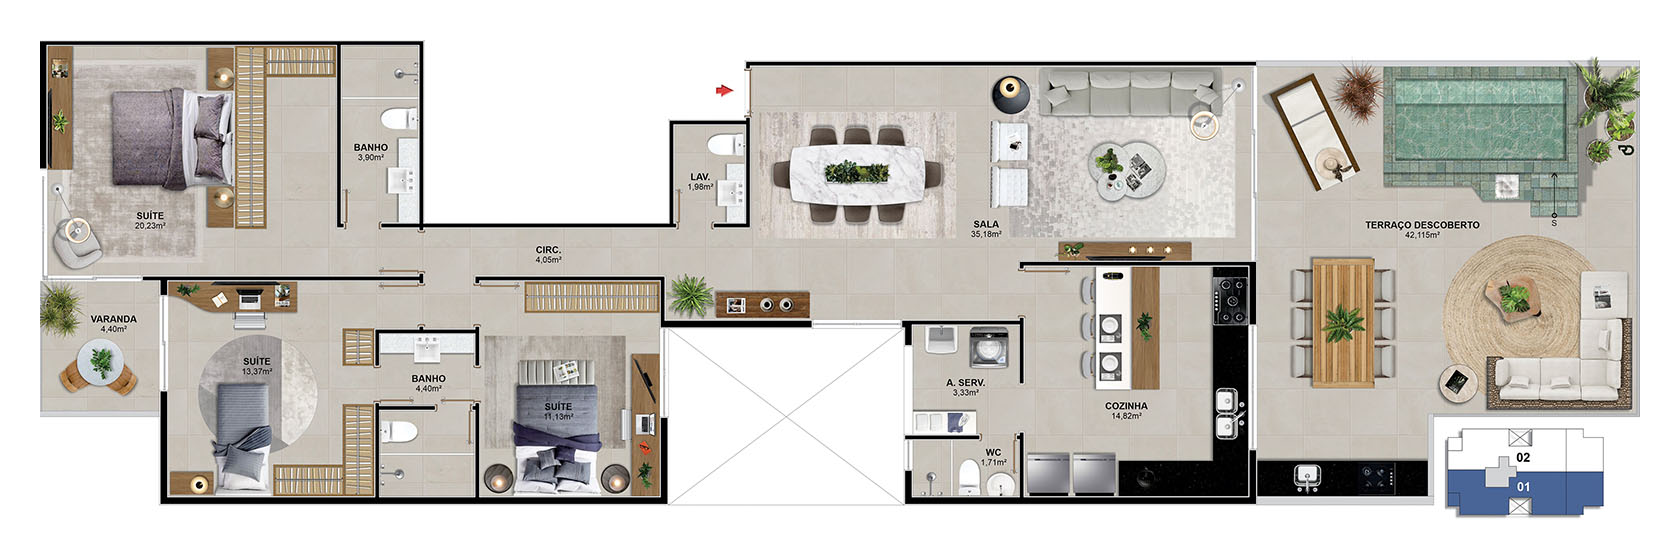 Cobertura 301 - 173,53 m²